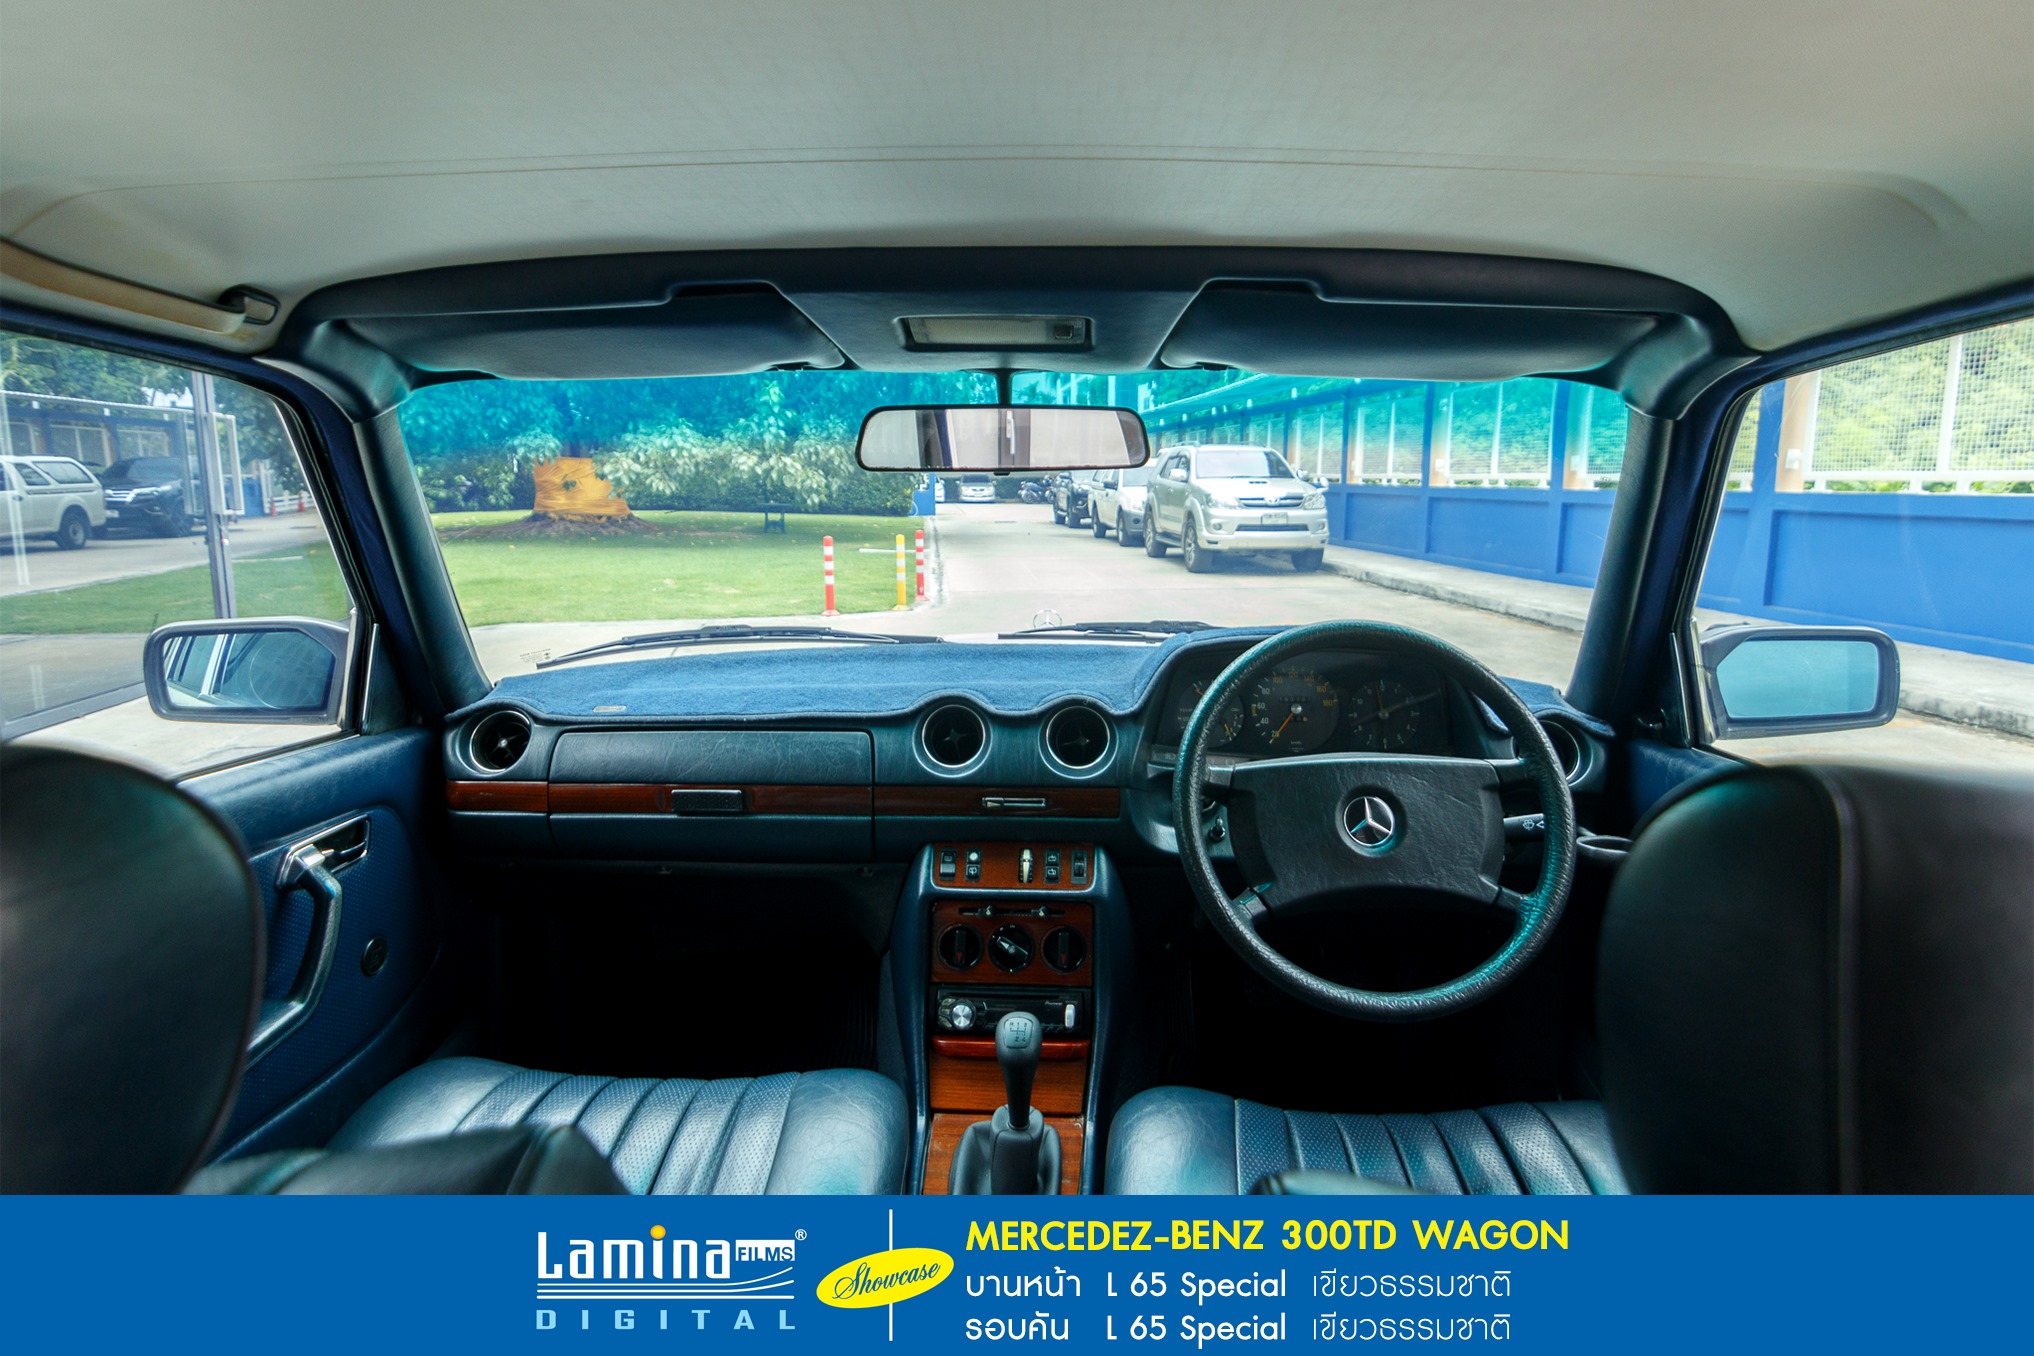 ฟิล์มใสกันร้อน  lamina special series MERCEDEZ BENZ 300TD WAGON  8